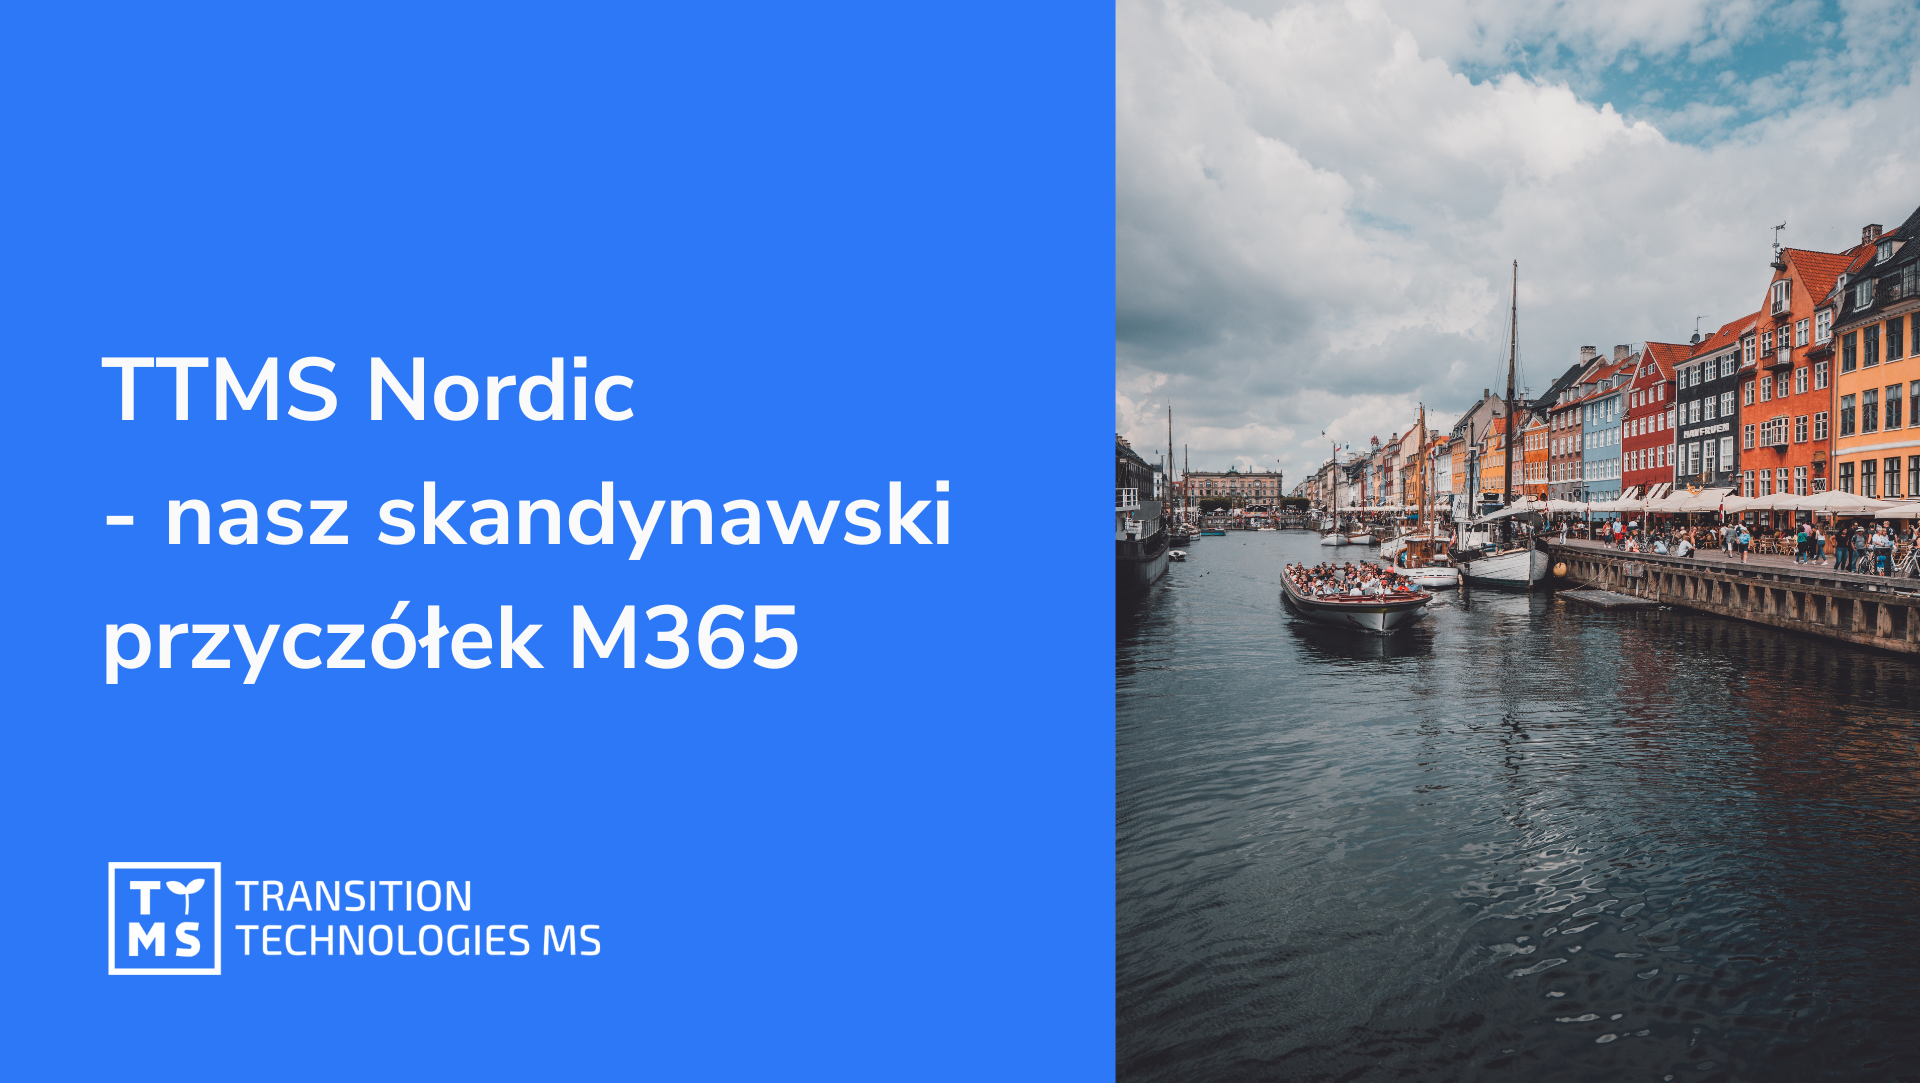 TTMS Nordic – nasz skandynawski przyczółek M365